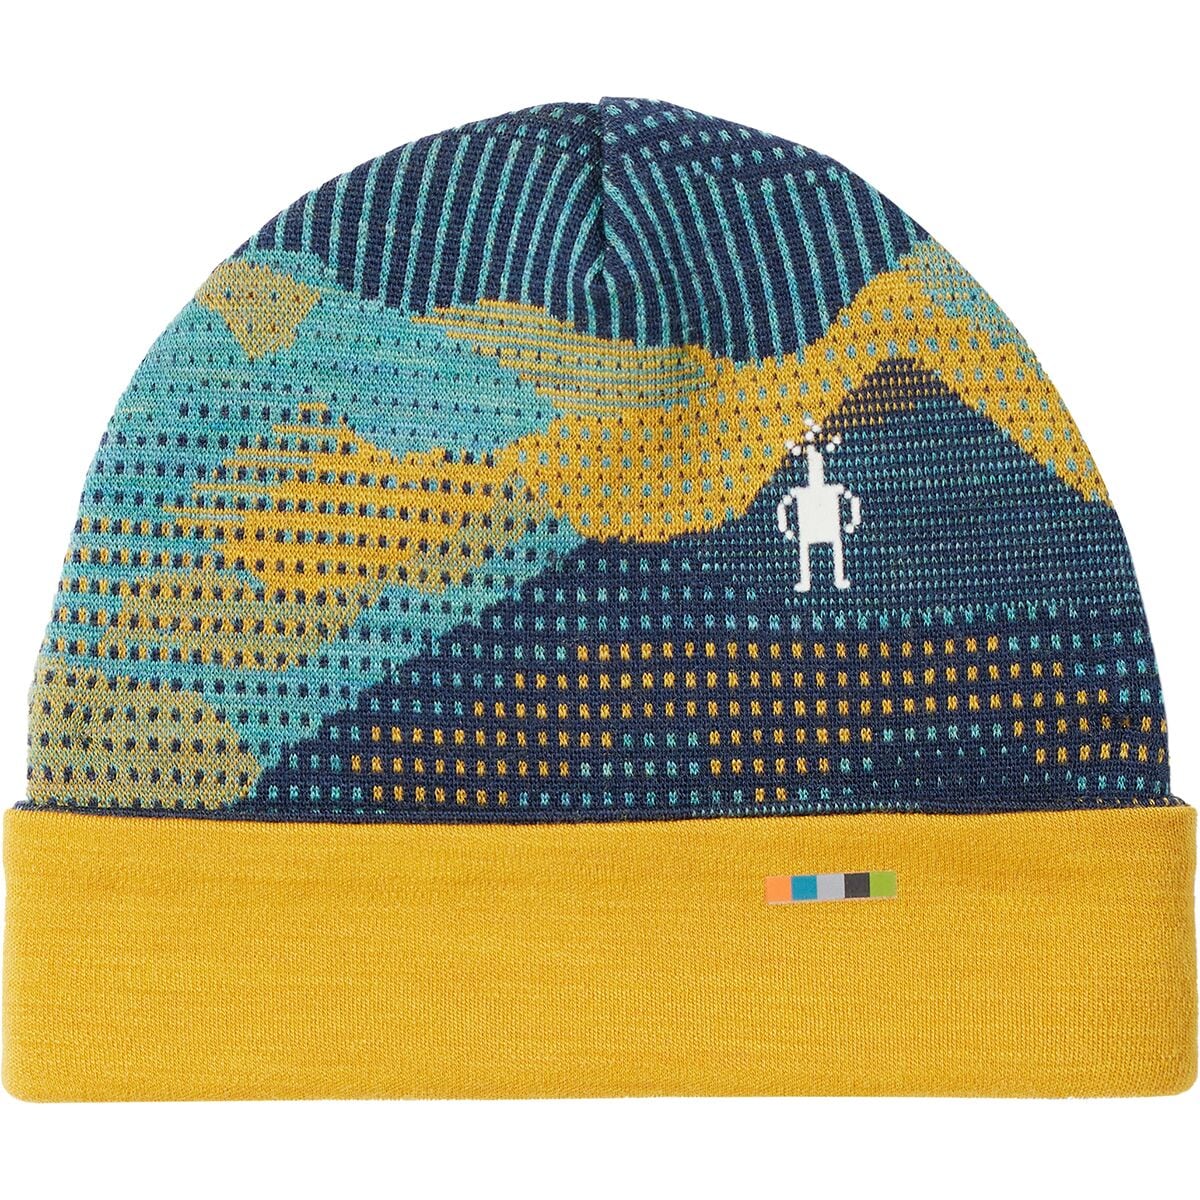 Kids Insulated Winter Hats, Terrazzo Ushanka Style